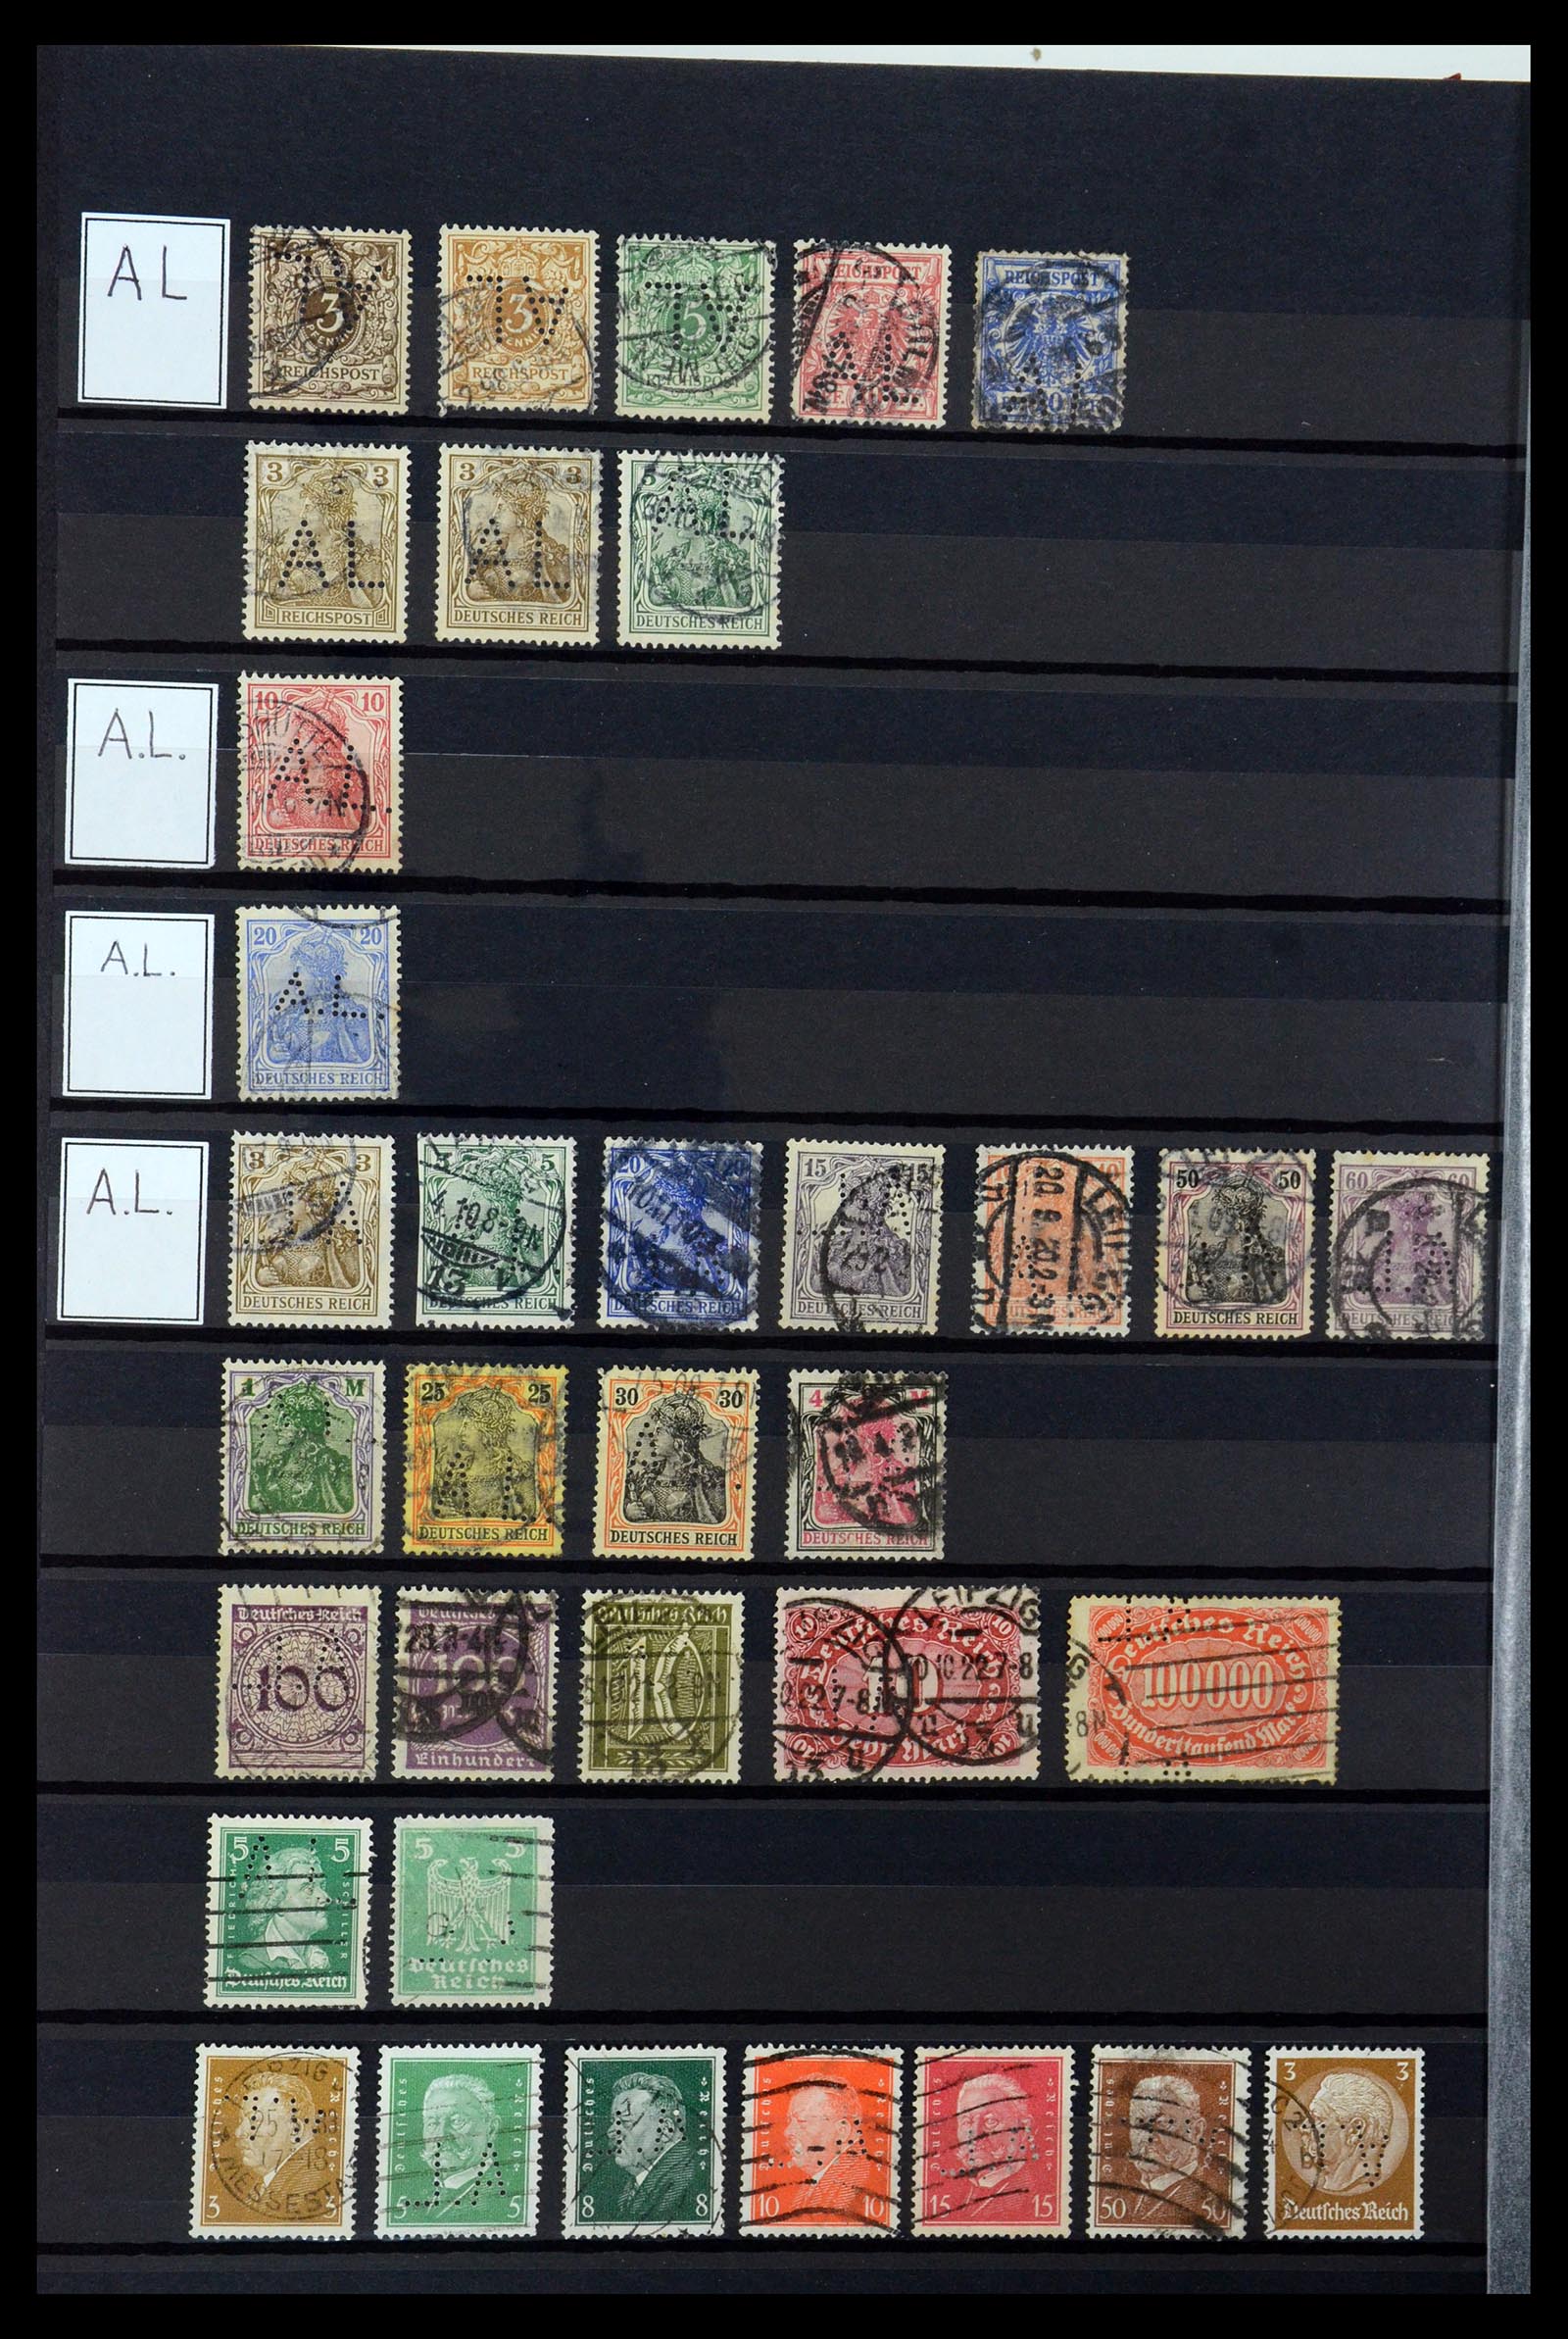 36405 018 - Stamp collection 36405 German Reich perfins 1880-1945.